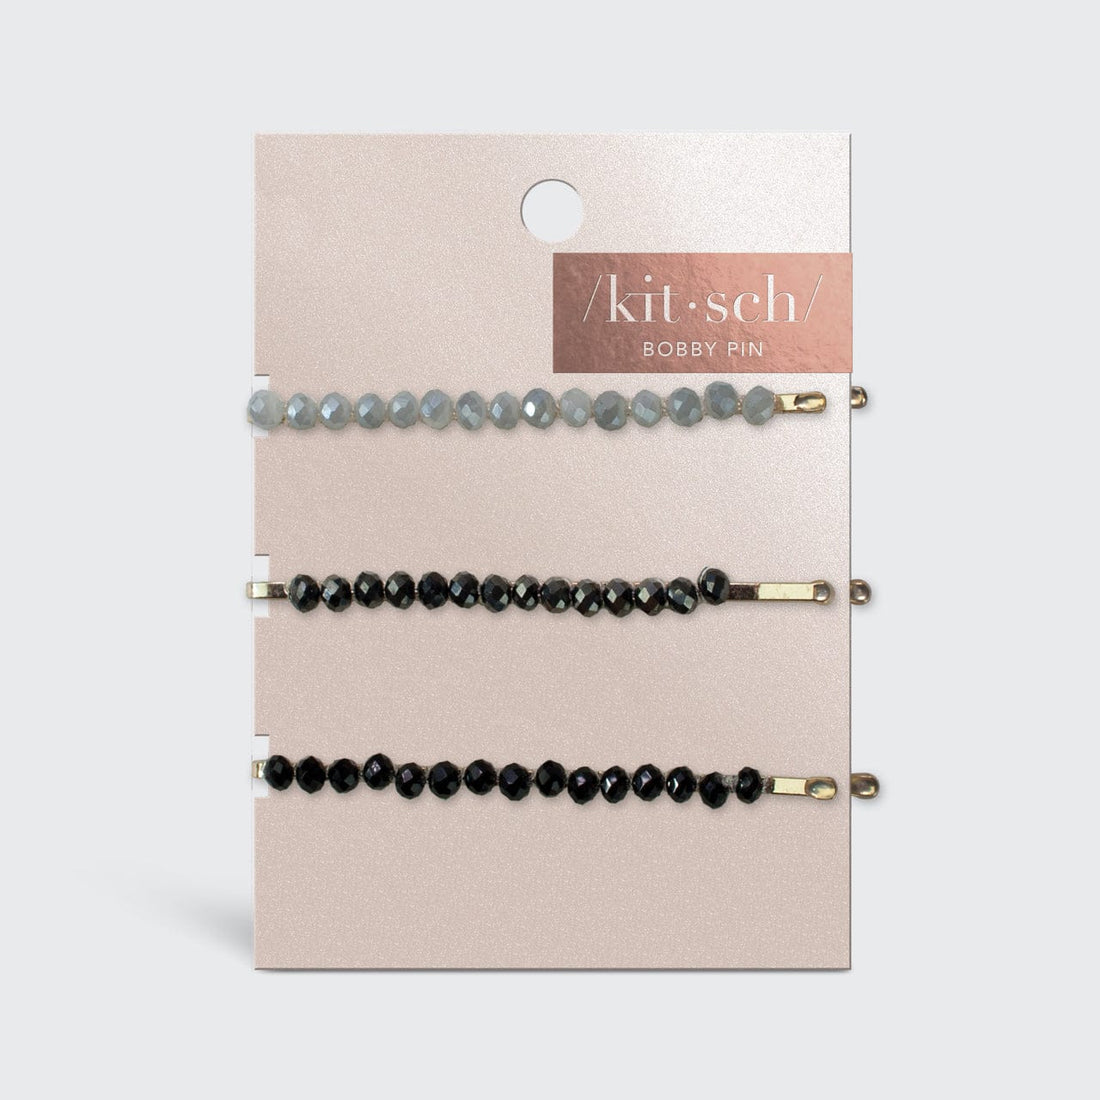 Haarnadeln aus schwarzem/grauem Metall mit Perlen